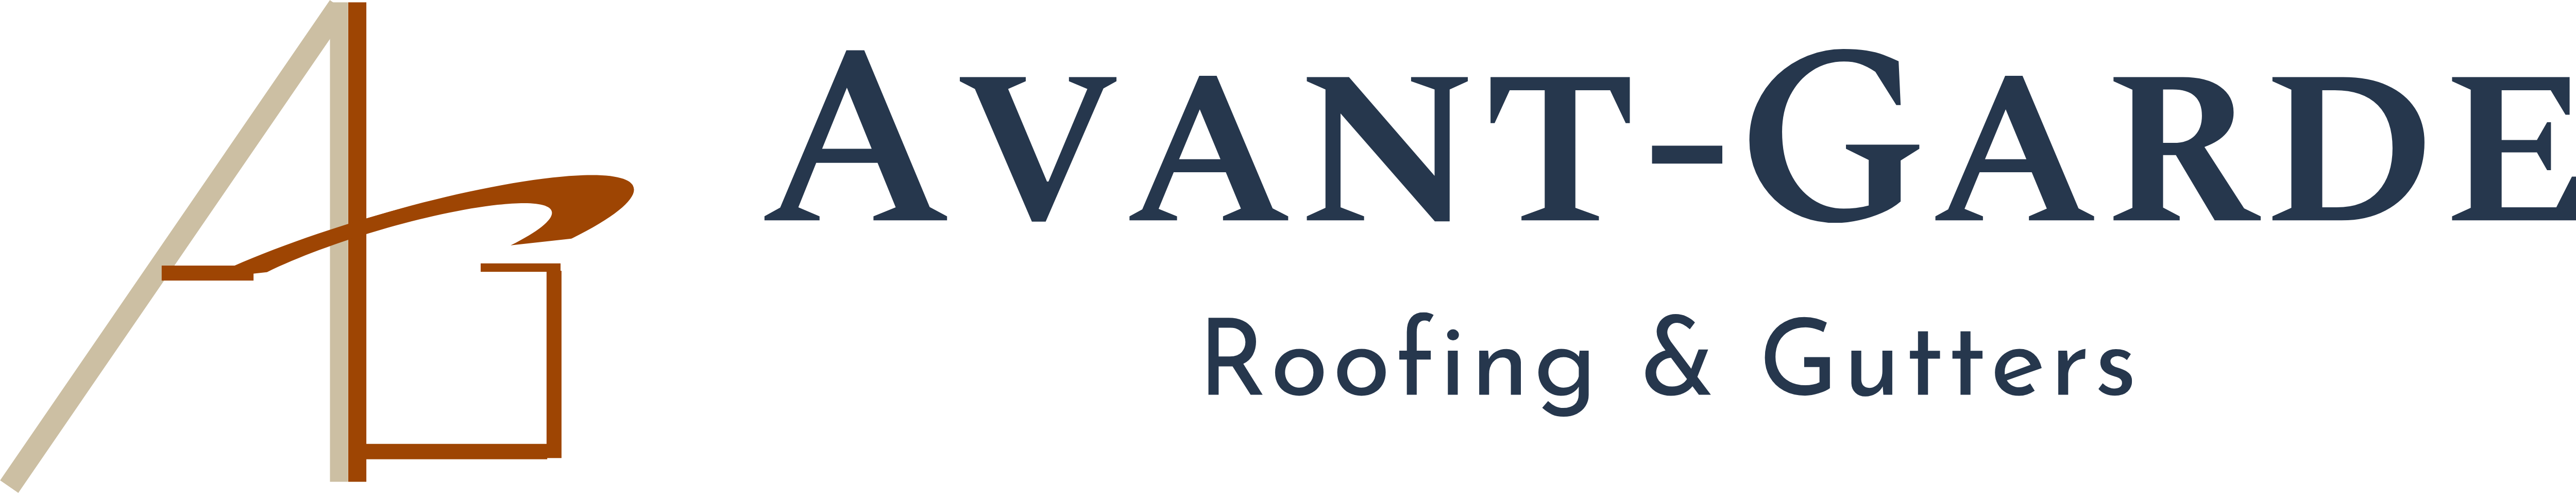 Avant-Garde Roofing & Gutters Logo